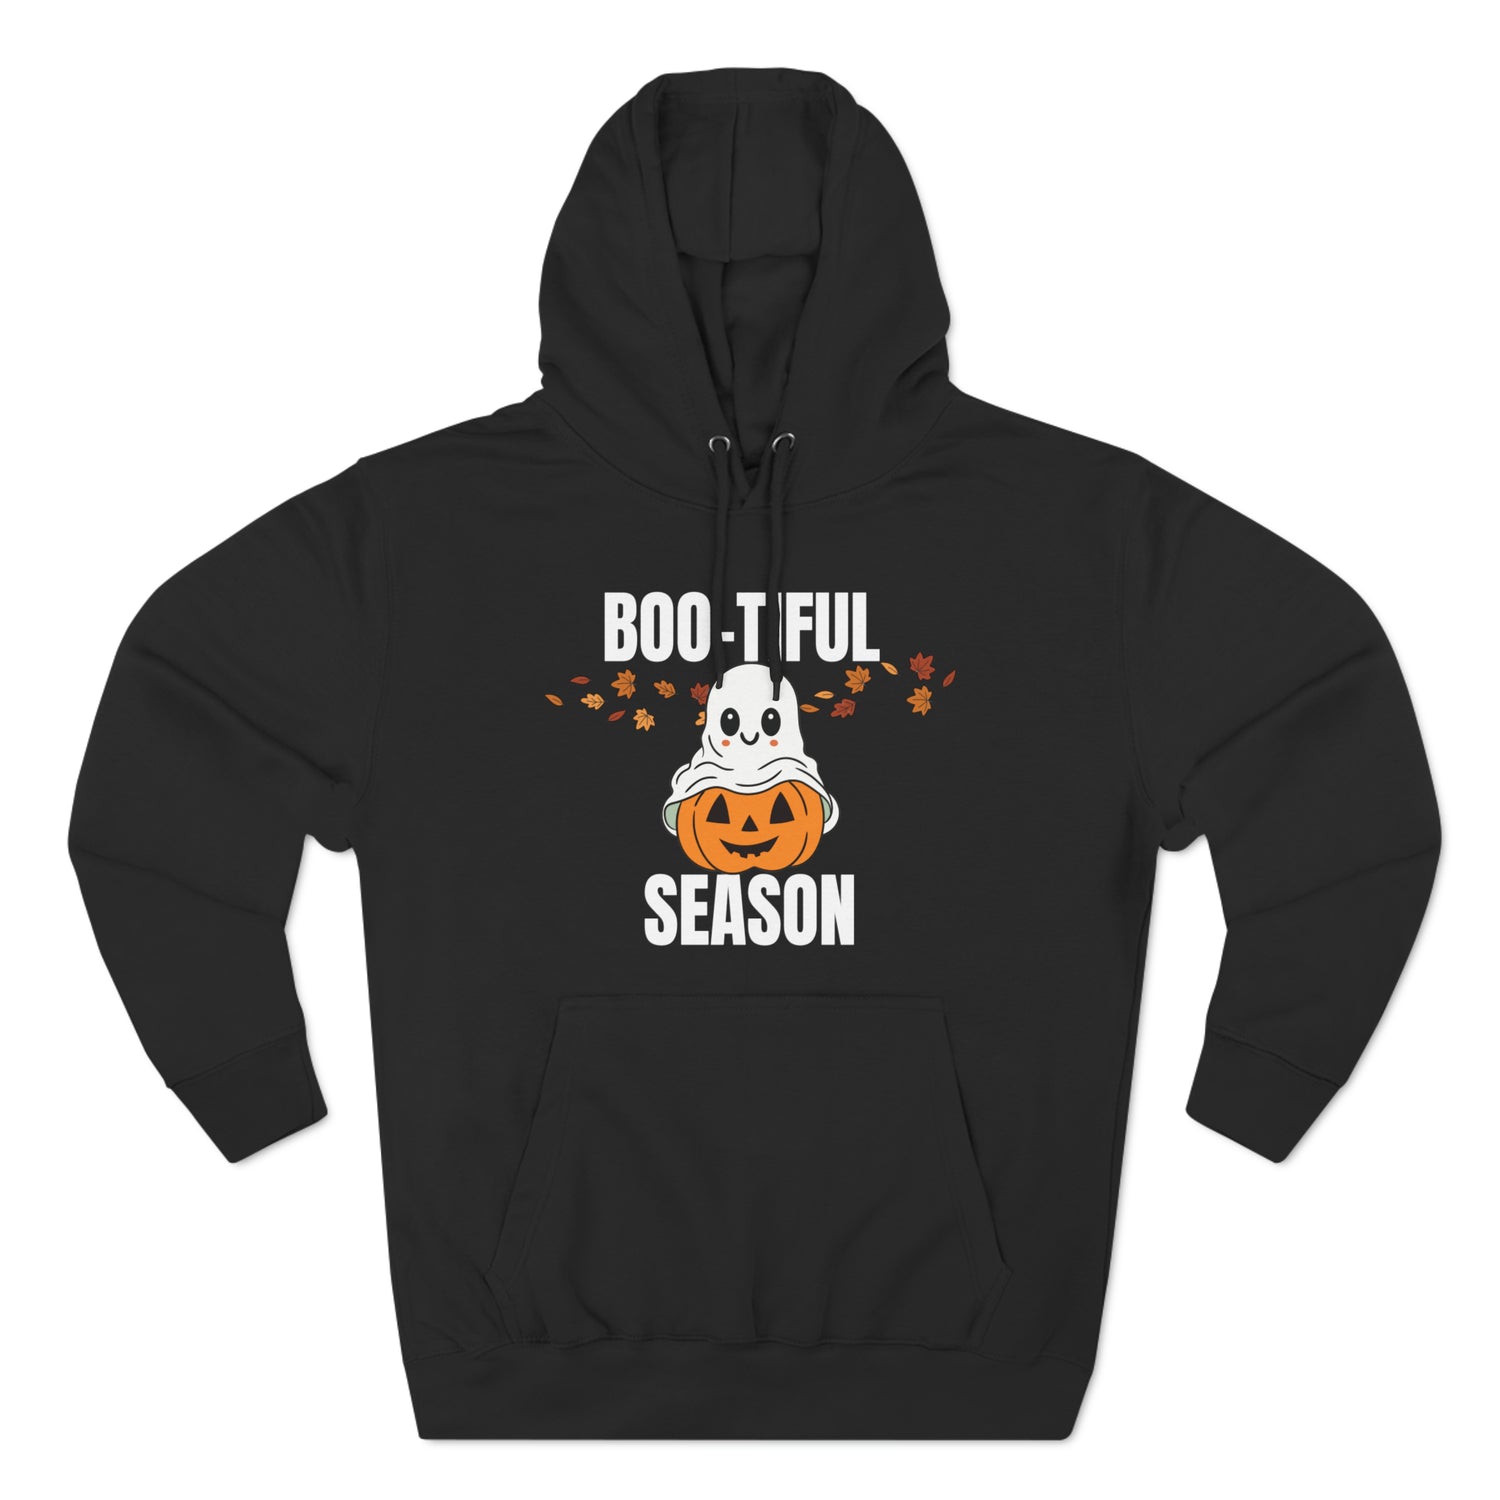 Black Hoodie Hoodie Halloween Sweatshirt for Spooky Hoodies Outfits this Fall Petrova Designs